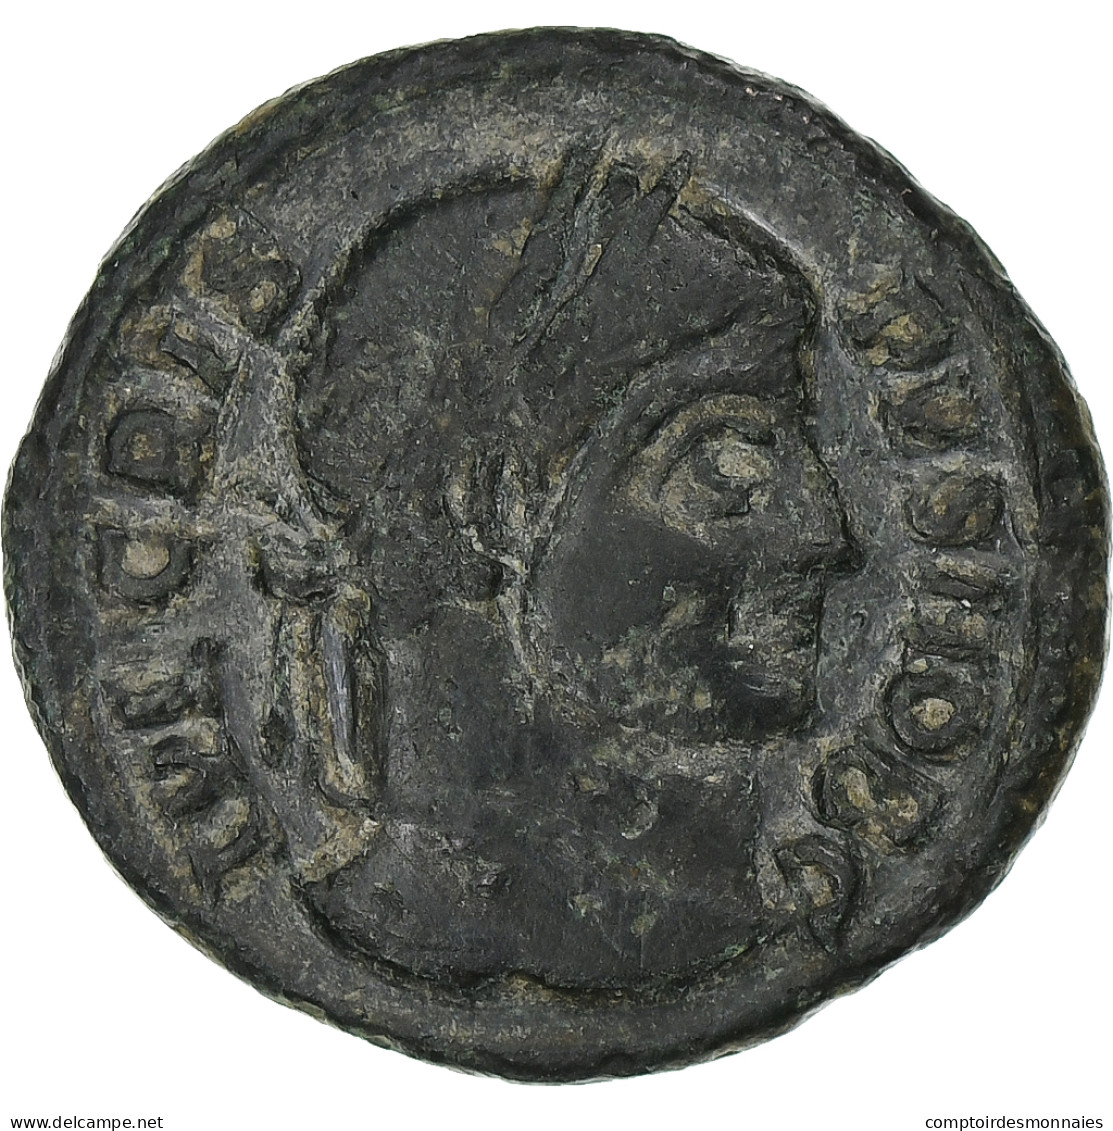 Crispus, Follis, 321-324, Siscia, Bronze, TTB, RIC:181 - El Imperio Christiano (307 / 363)